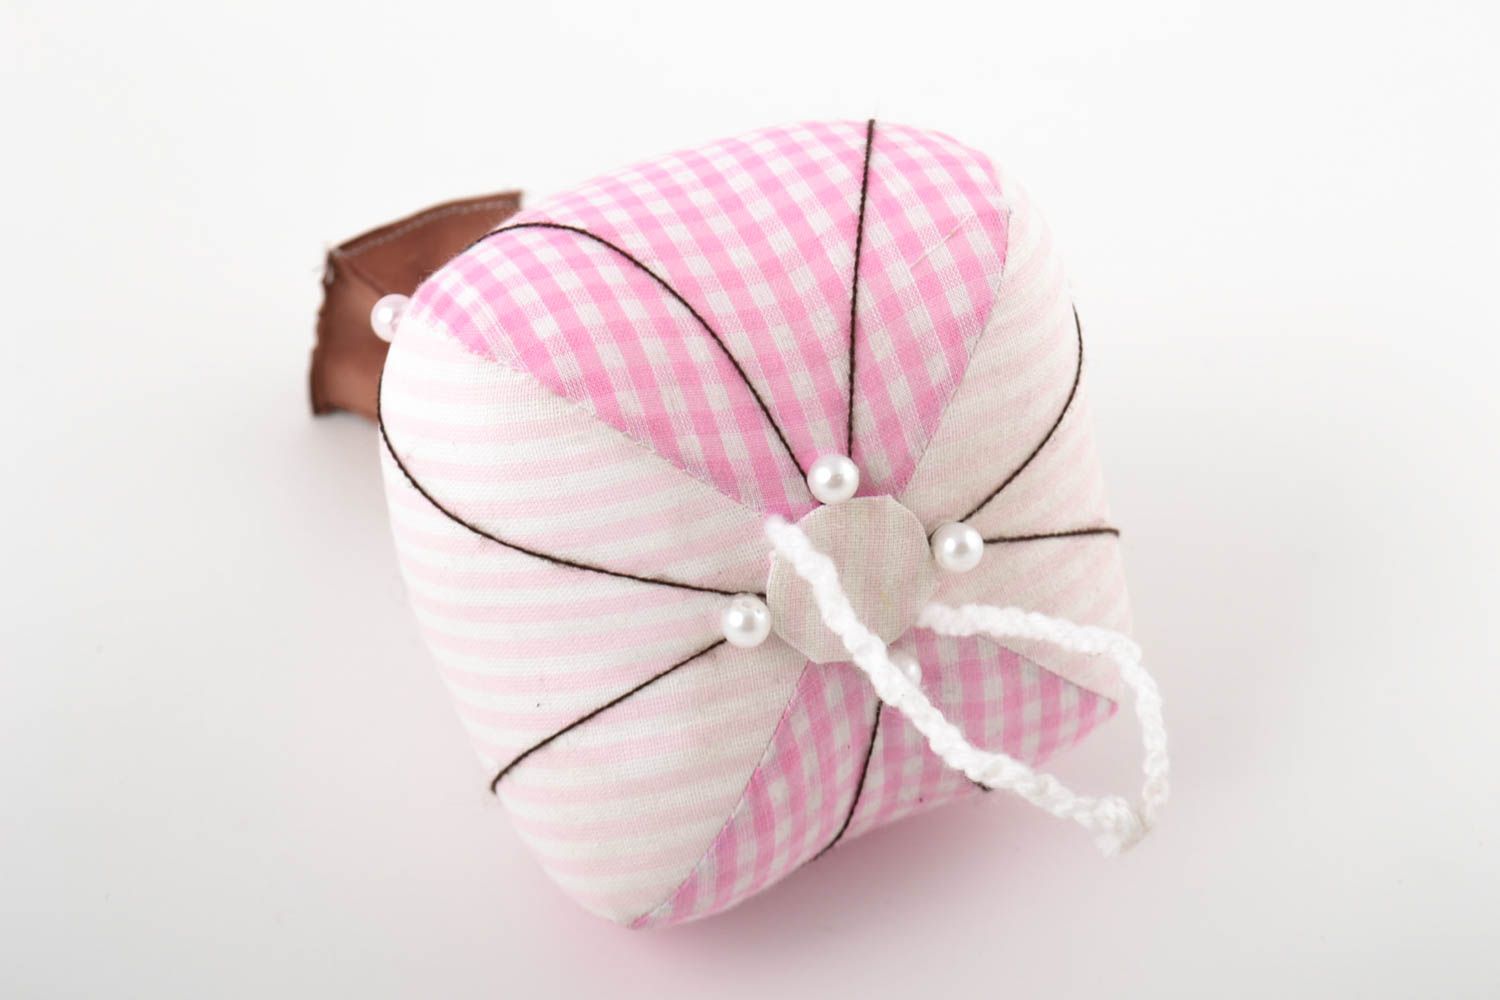 Textil Spielzeug handmade Deko Anhänger Stoff Kuscheltier Designer Geschenk rosa foto 5